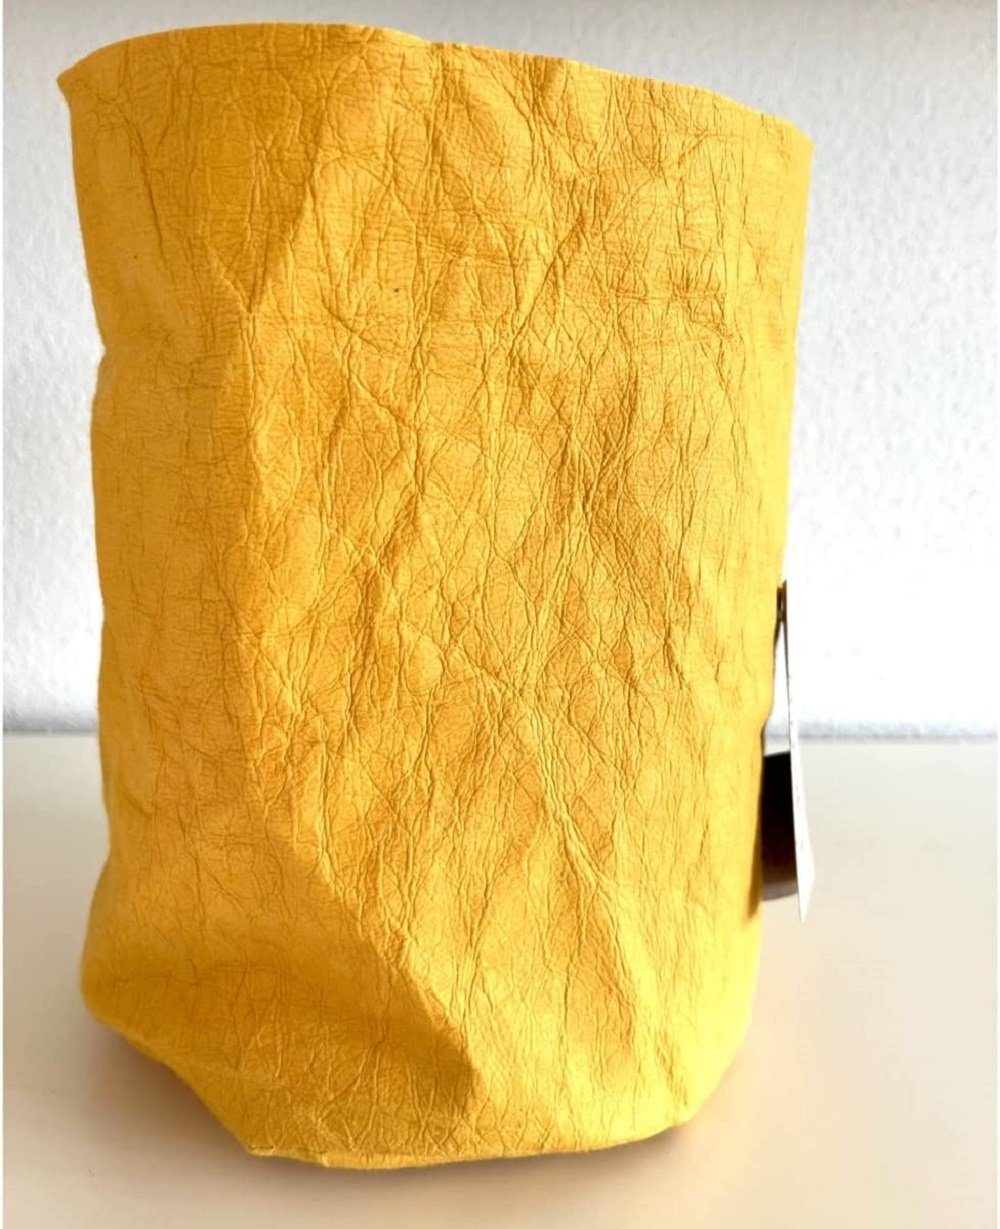 Papyr, Papier Brotkorb Style waschbarem Krempelkorb hergestellt wie Lederoptik & NATURMATERIAL aus papyr®, Leder, L ist sieht AUS aber aus safran/gelb Trend ZELLULOSE rund LK nachhaltigem